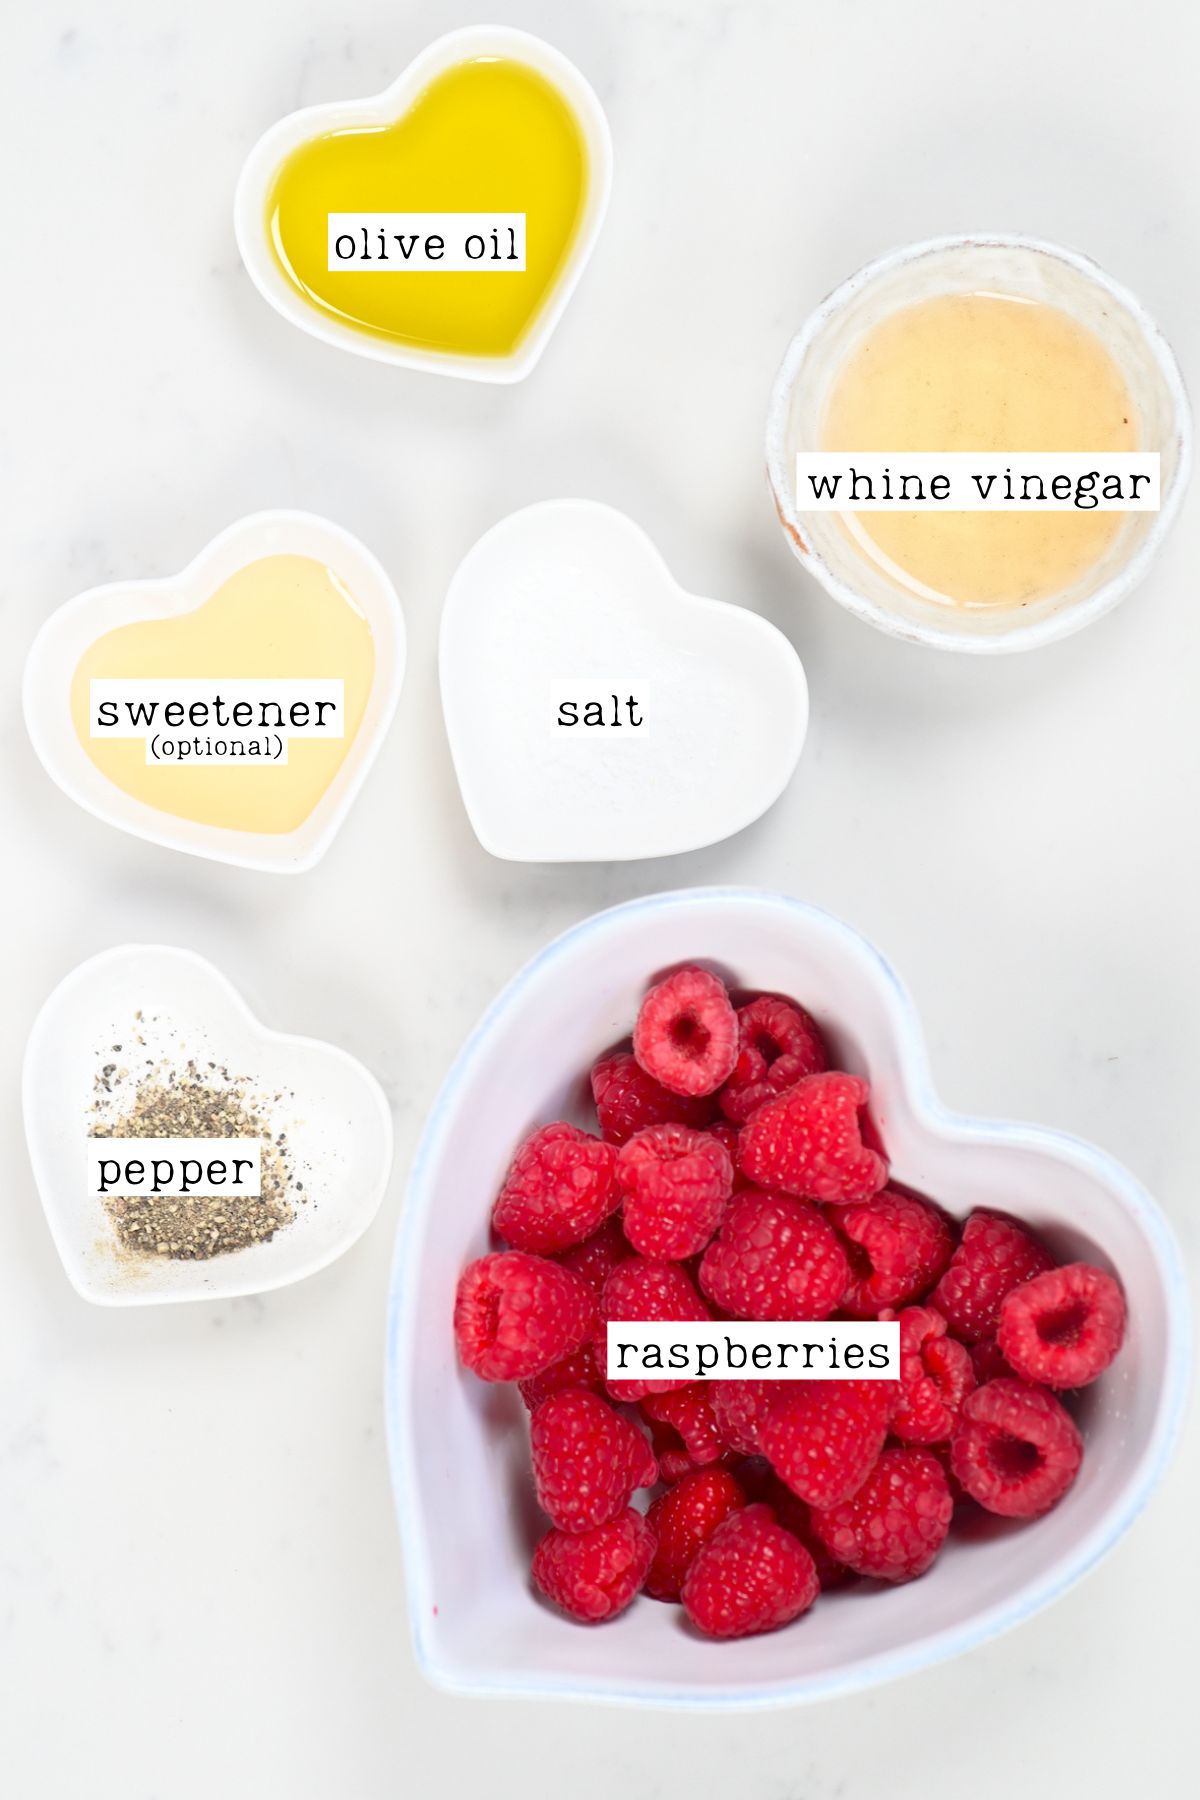 Ingredients for raspberry vinaigrette